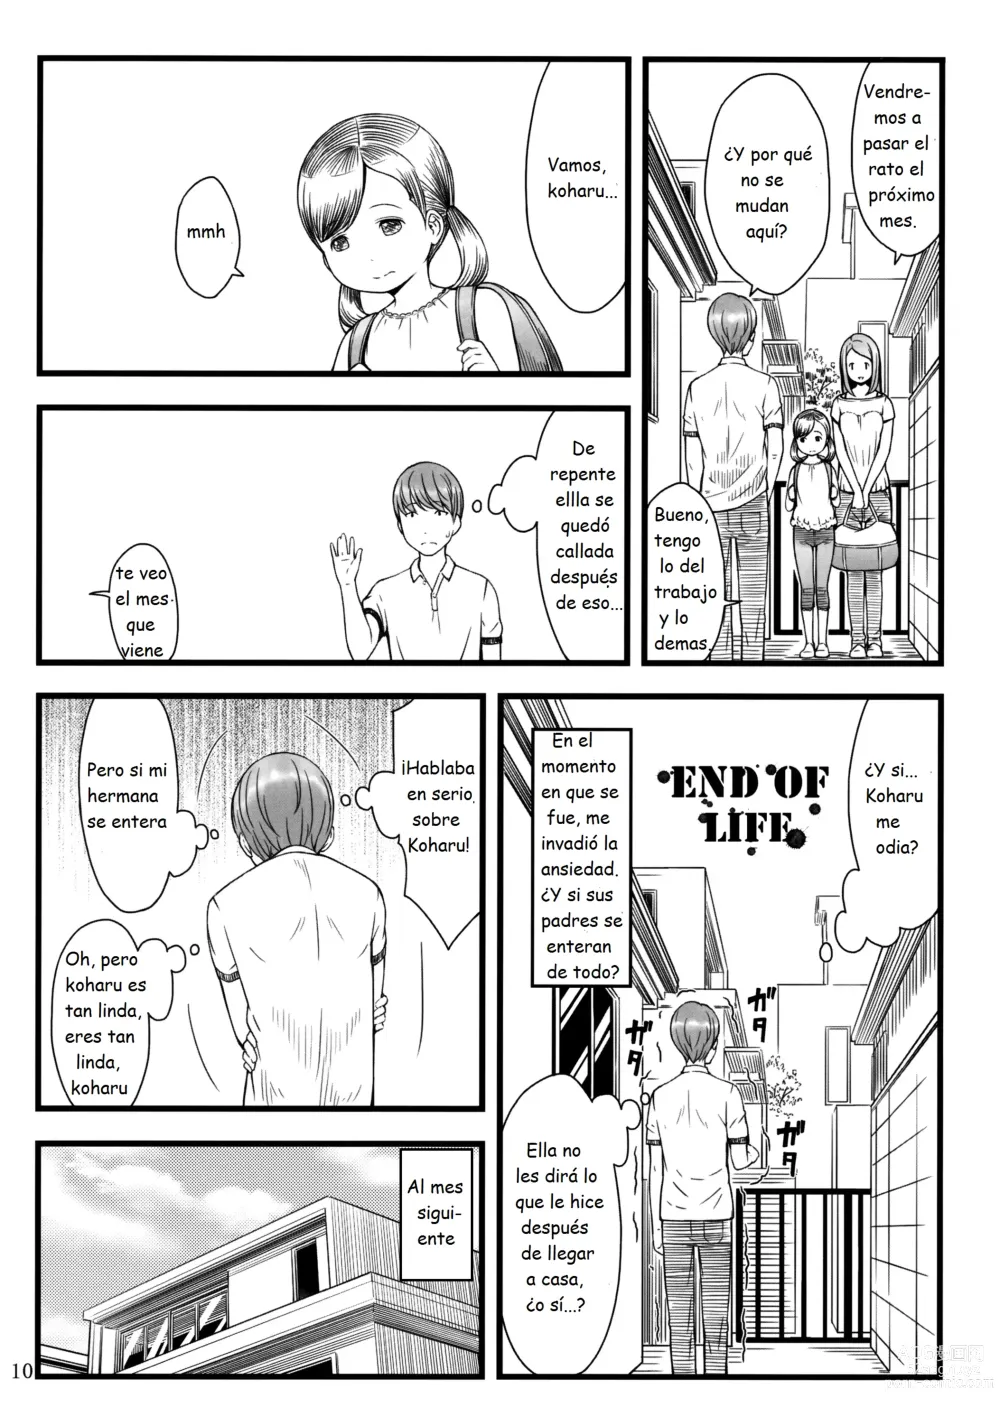 Page 9 of doujinshi MUÑECA